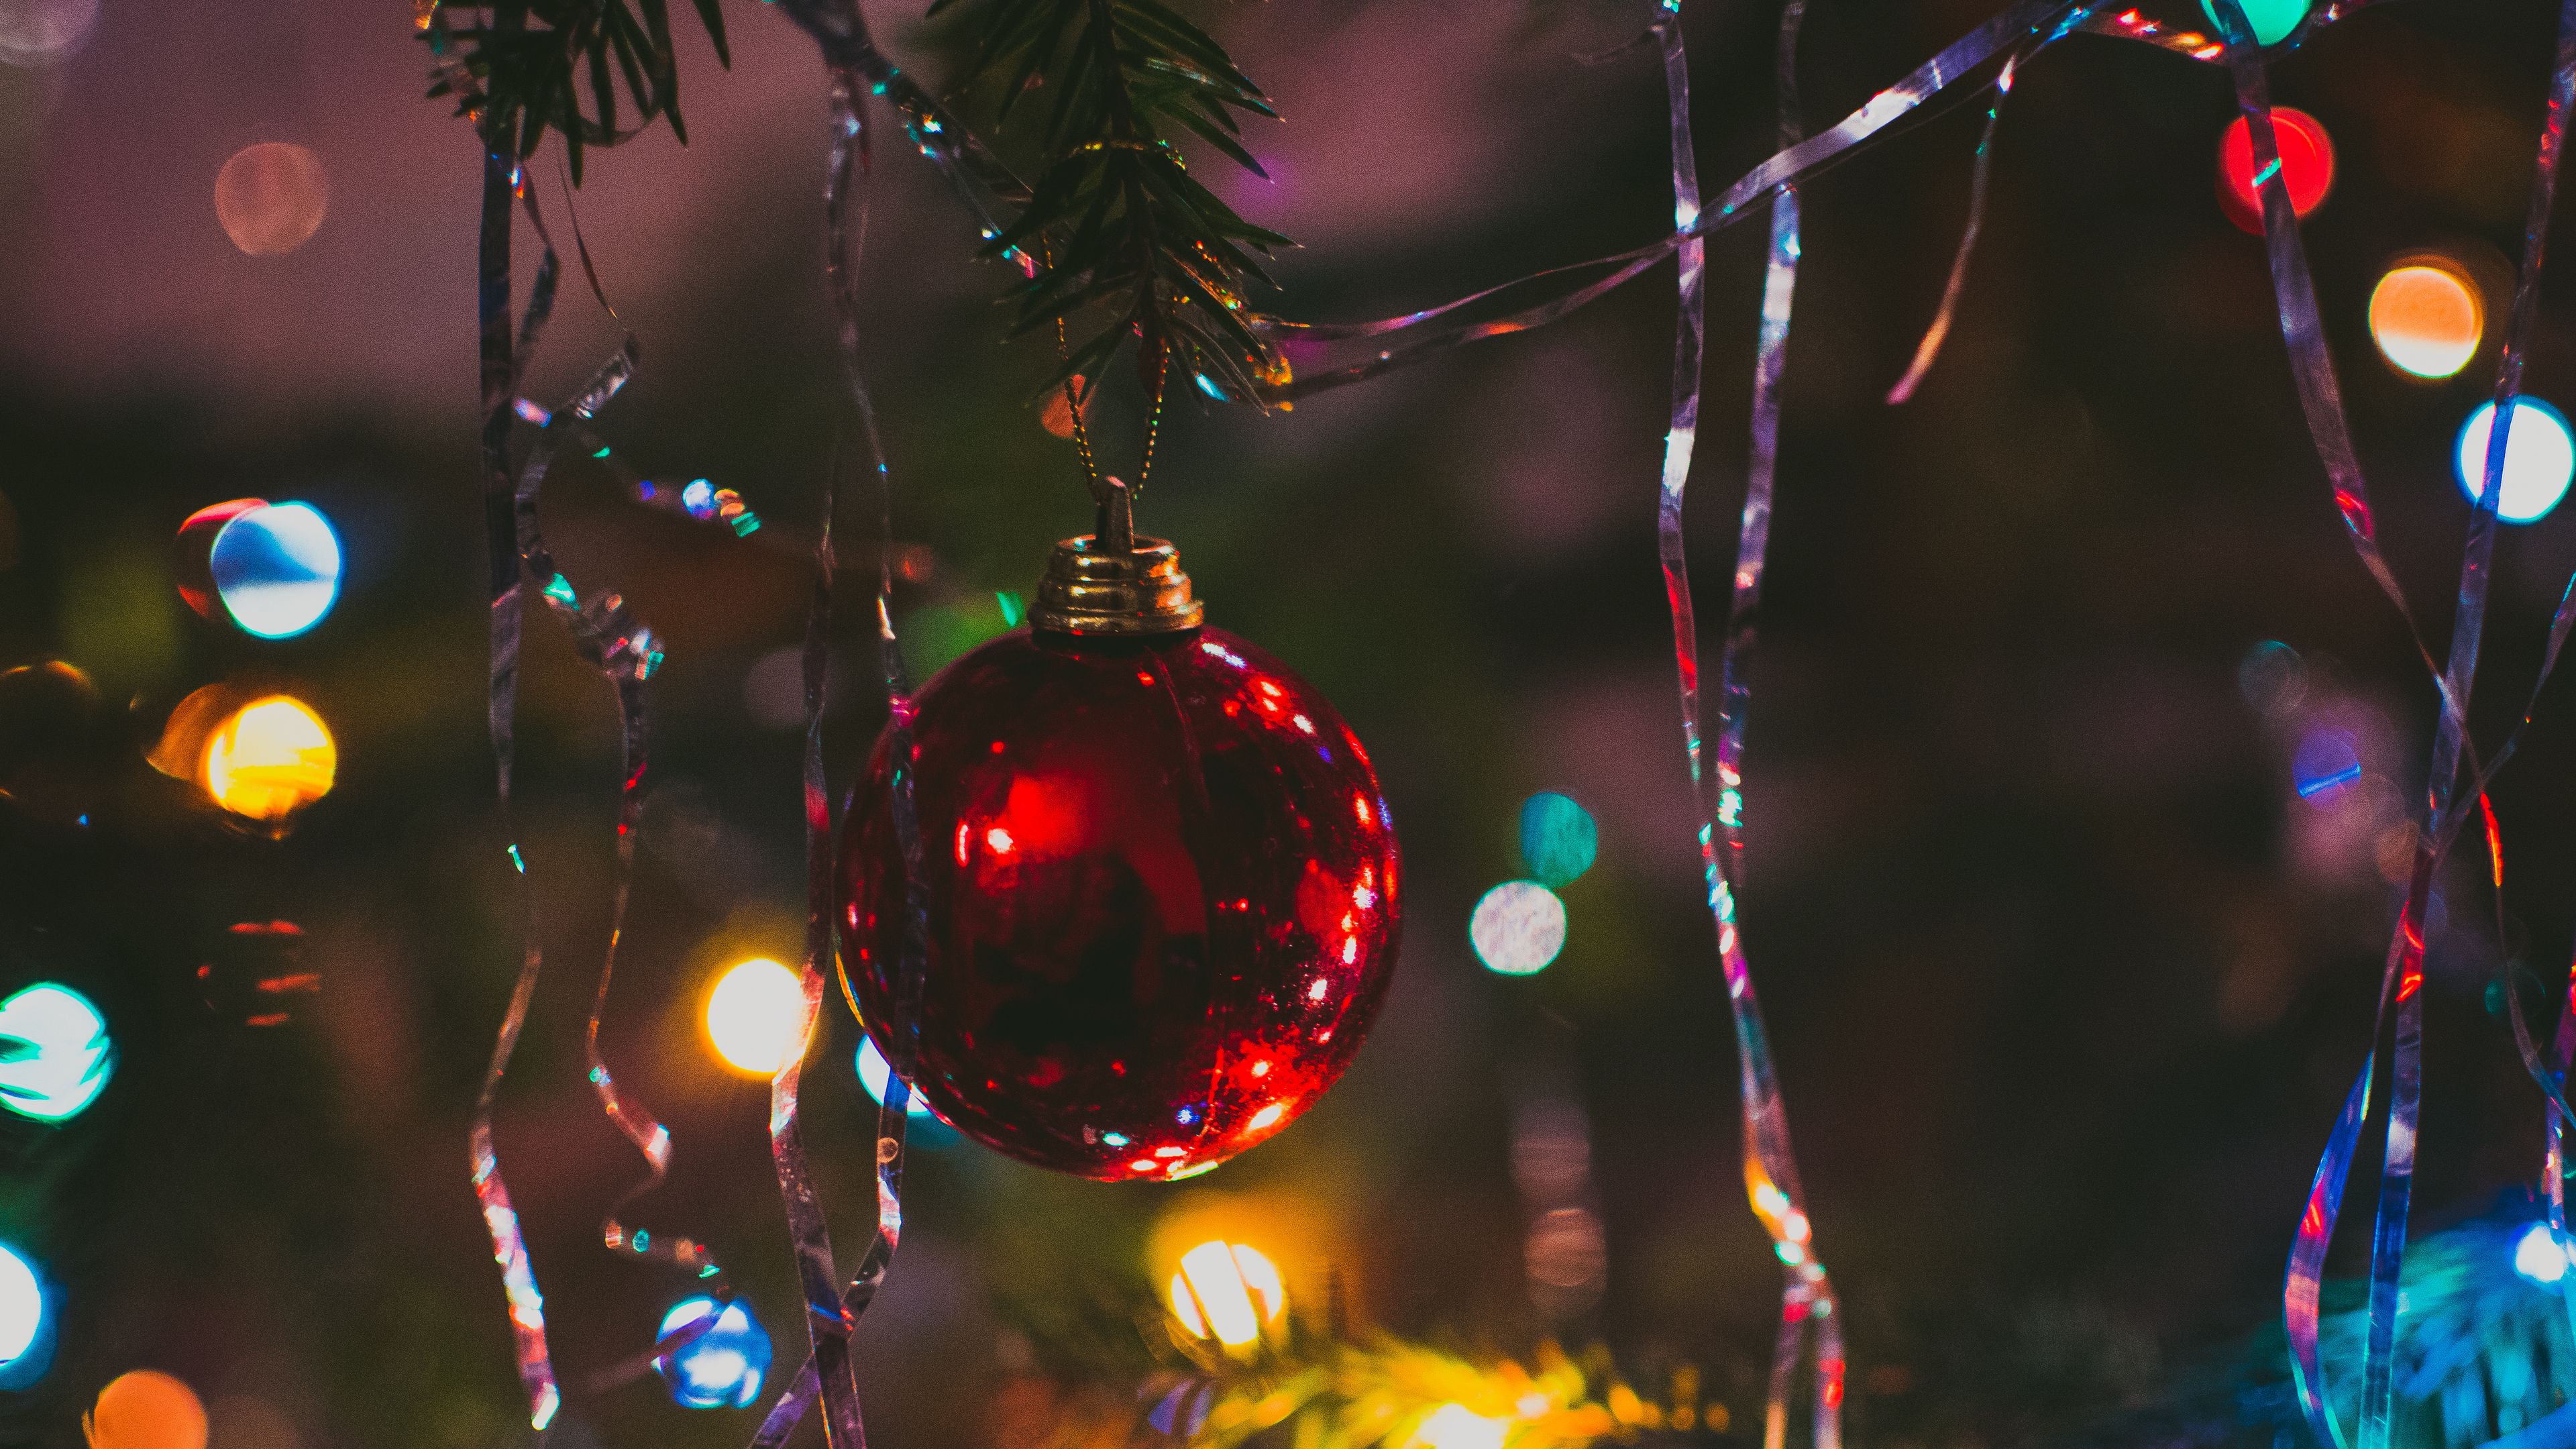 Cây thông Noel: Làm cho nhà bạn trở nên trang trọng hơn với cây thông Noel lộng lẫy. Chiêm ngưỡng sự tinh tế của cây được trang trí đầy màu sắc và đẹp mắt, với đồ trang trí cầu kì và đầy ý nghĩa.